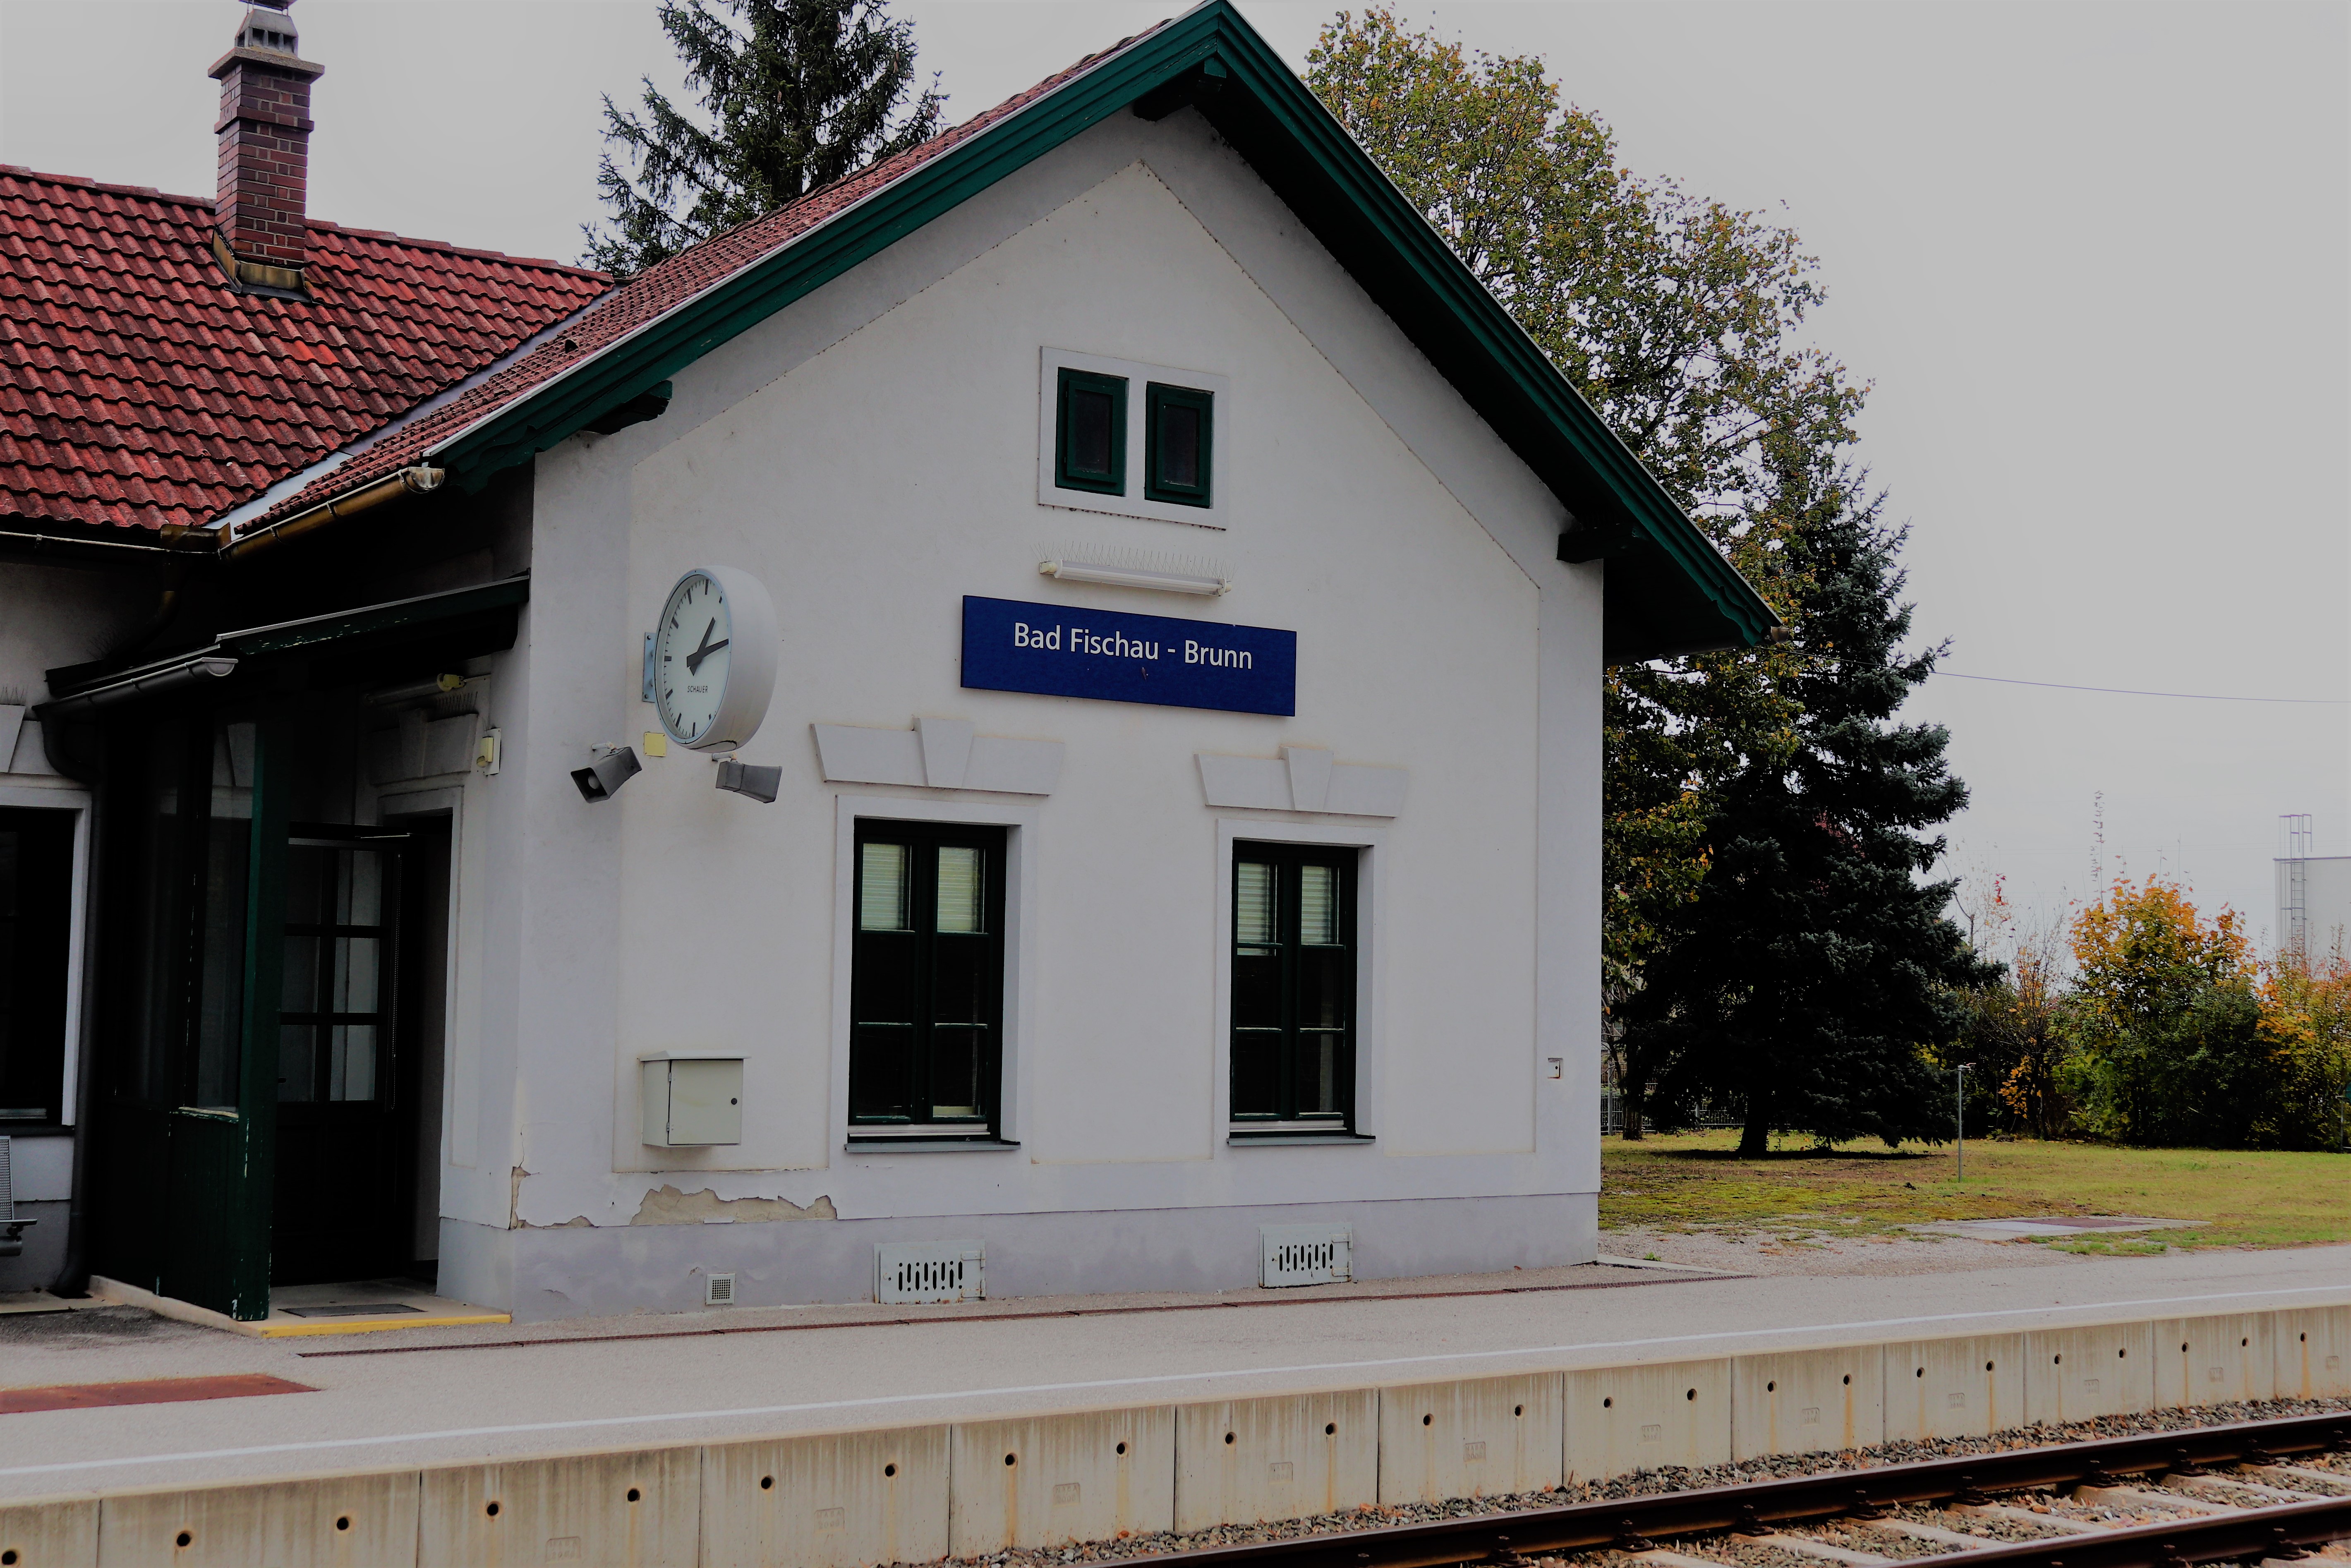 Bahnhofshaus von Bad Fischau-Brunn